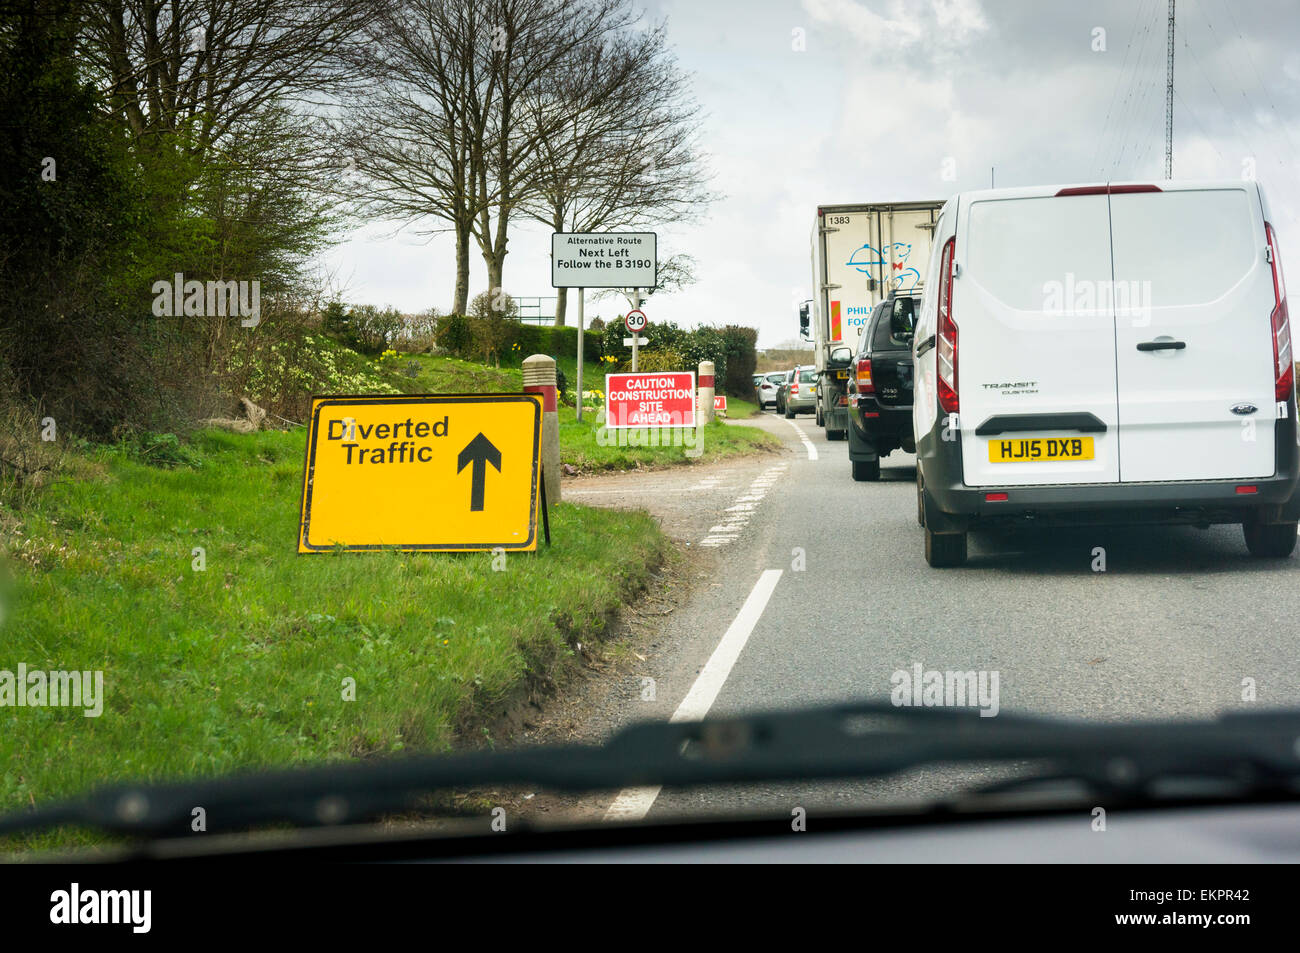 Embouteillage sur une route de campagne avec le trafic détourné signe en travaux routiers, England, UK Banque D'Images